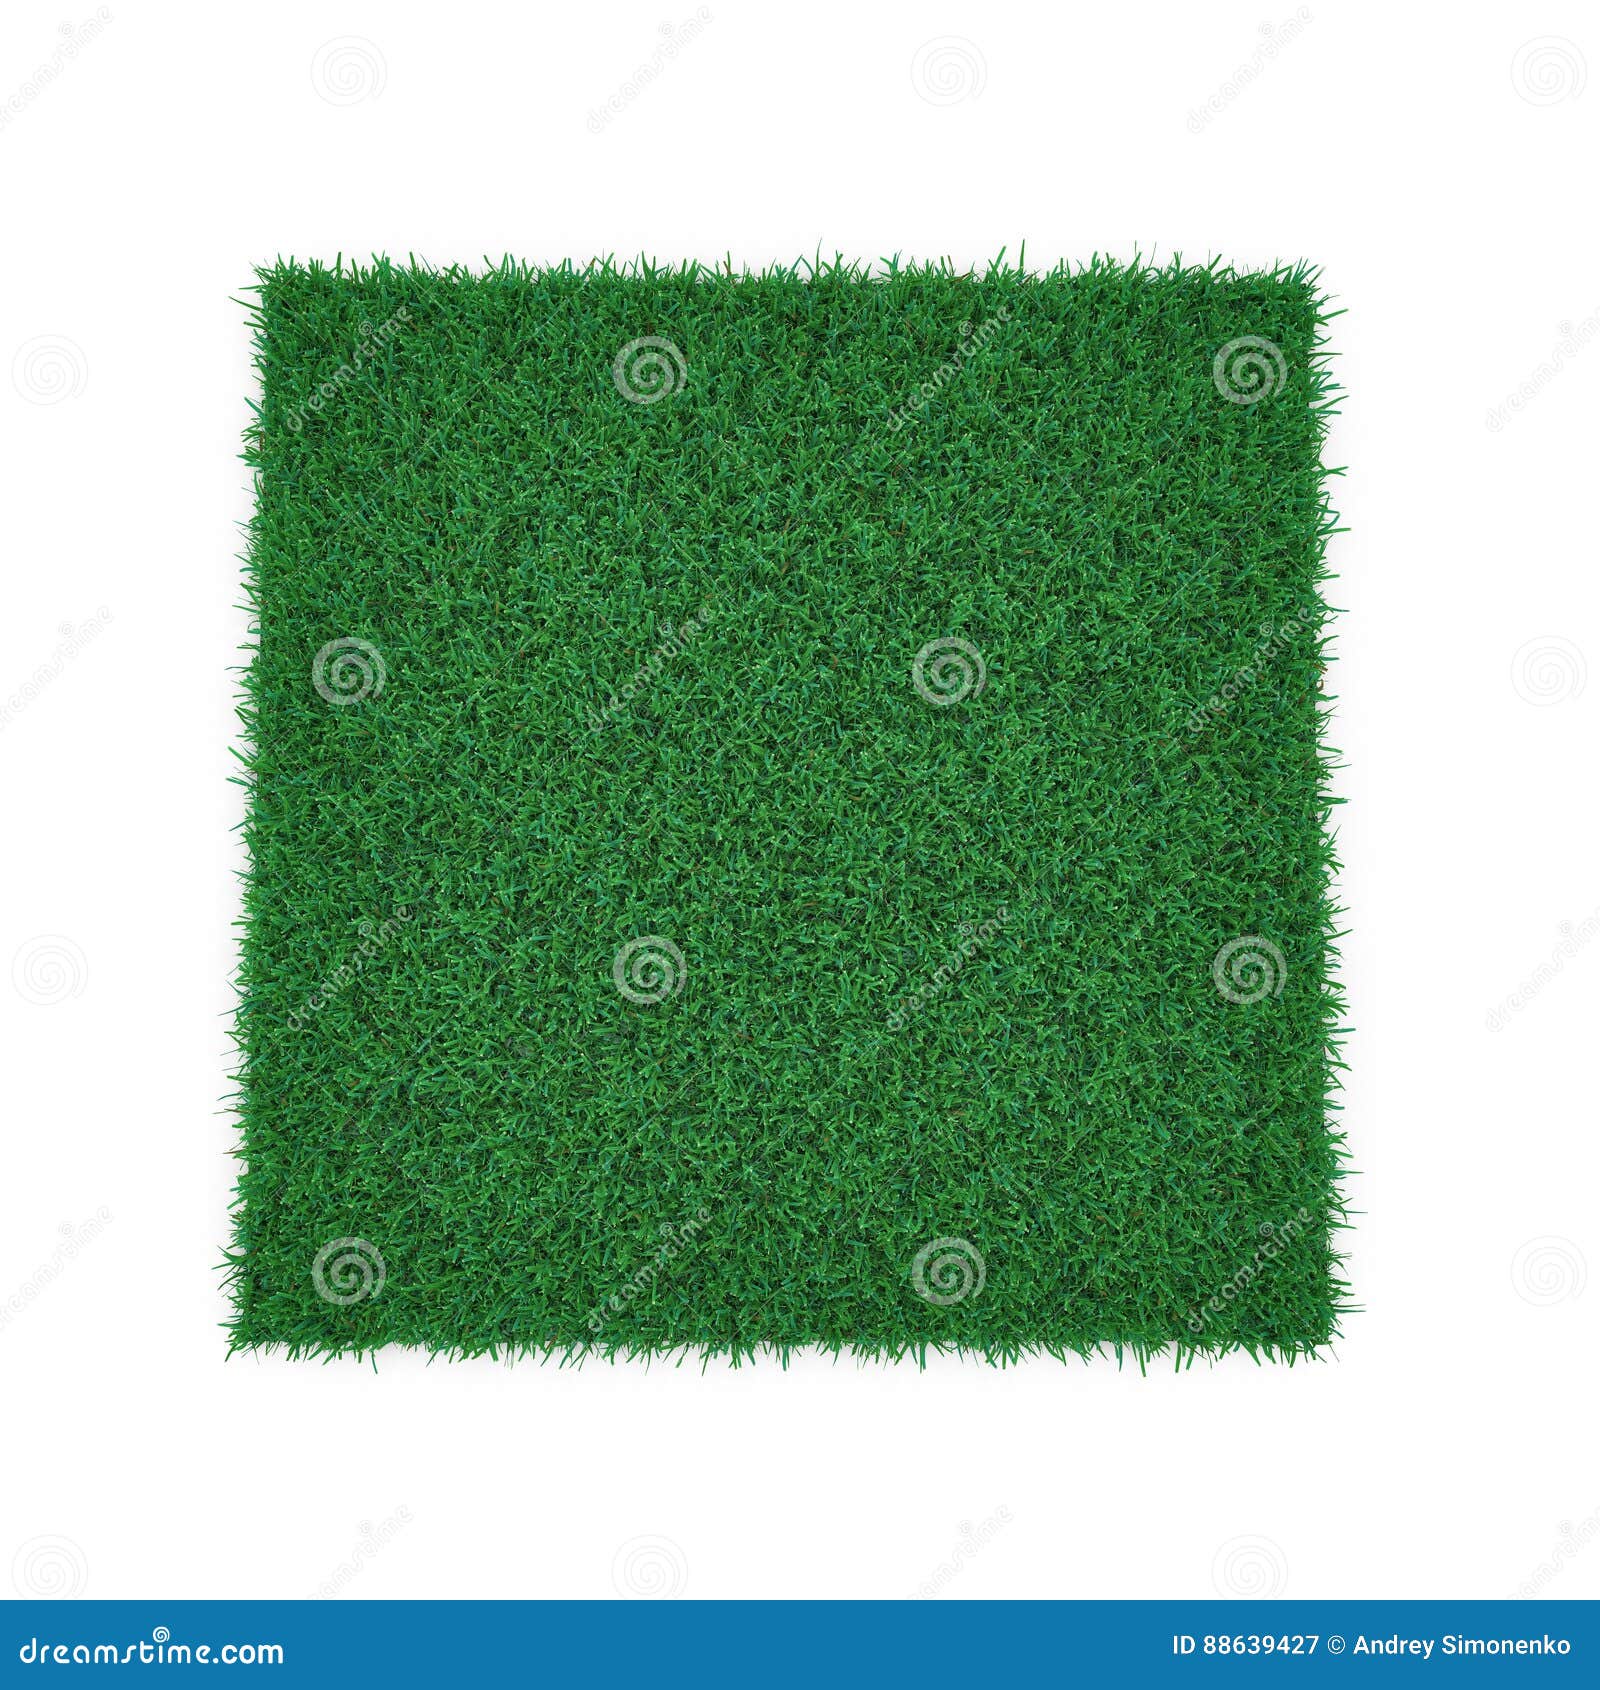 kentucky bluegrass grass on white. 3d 